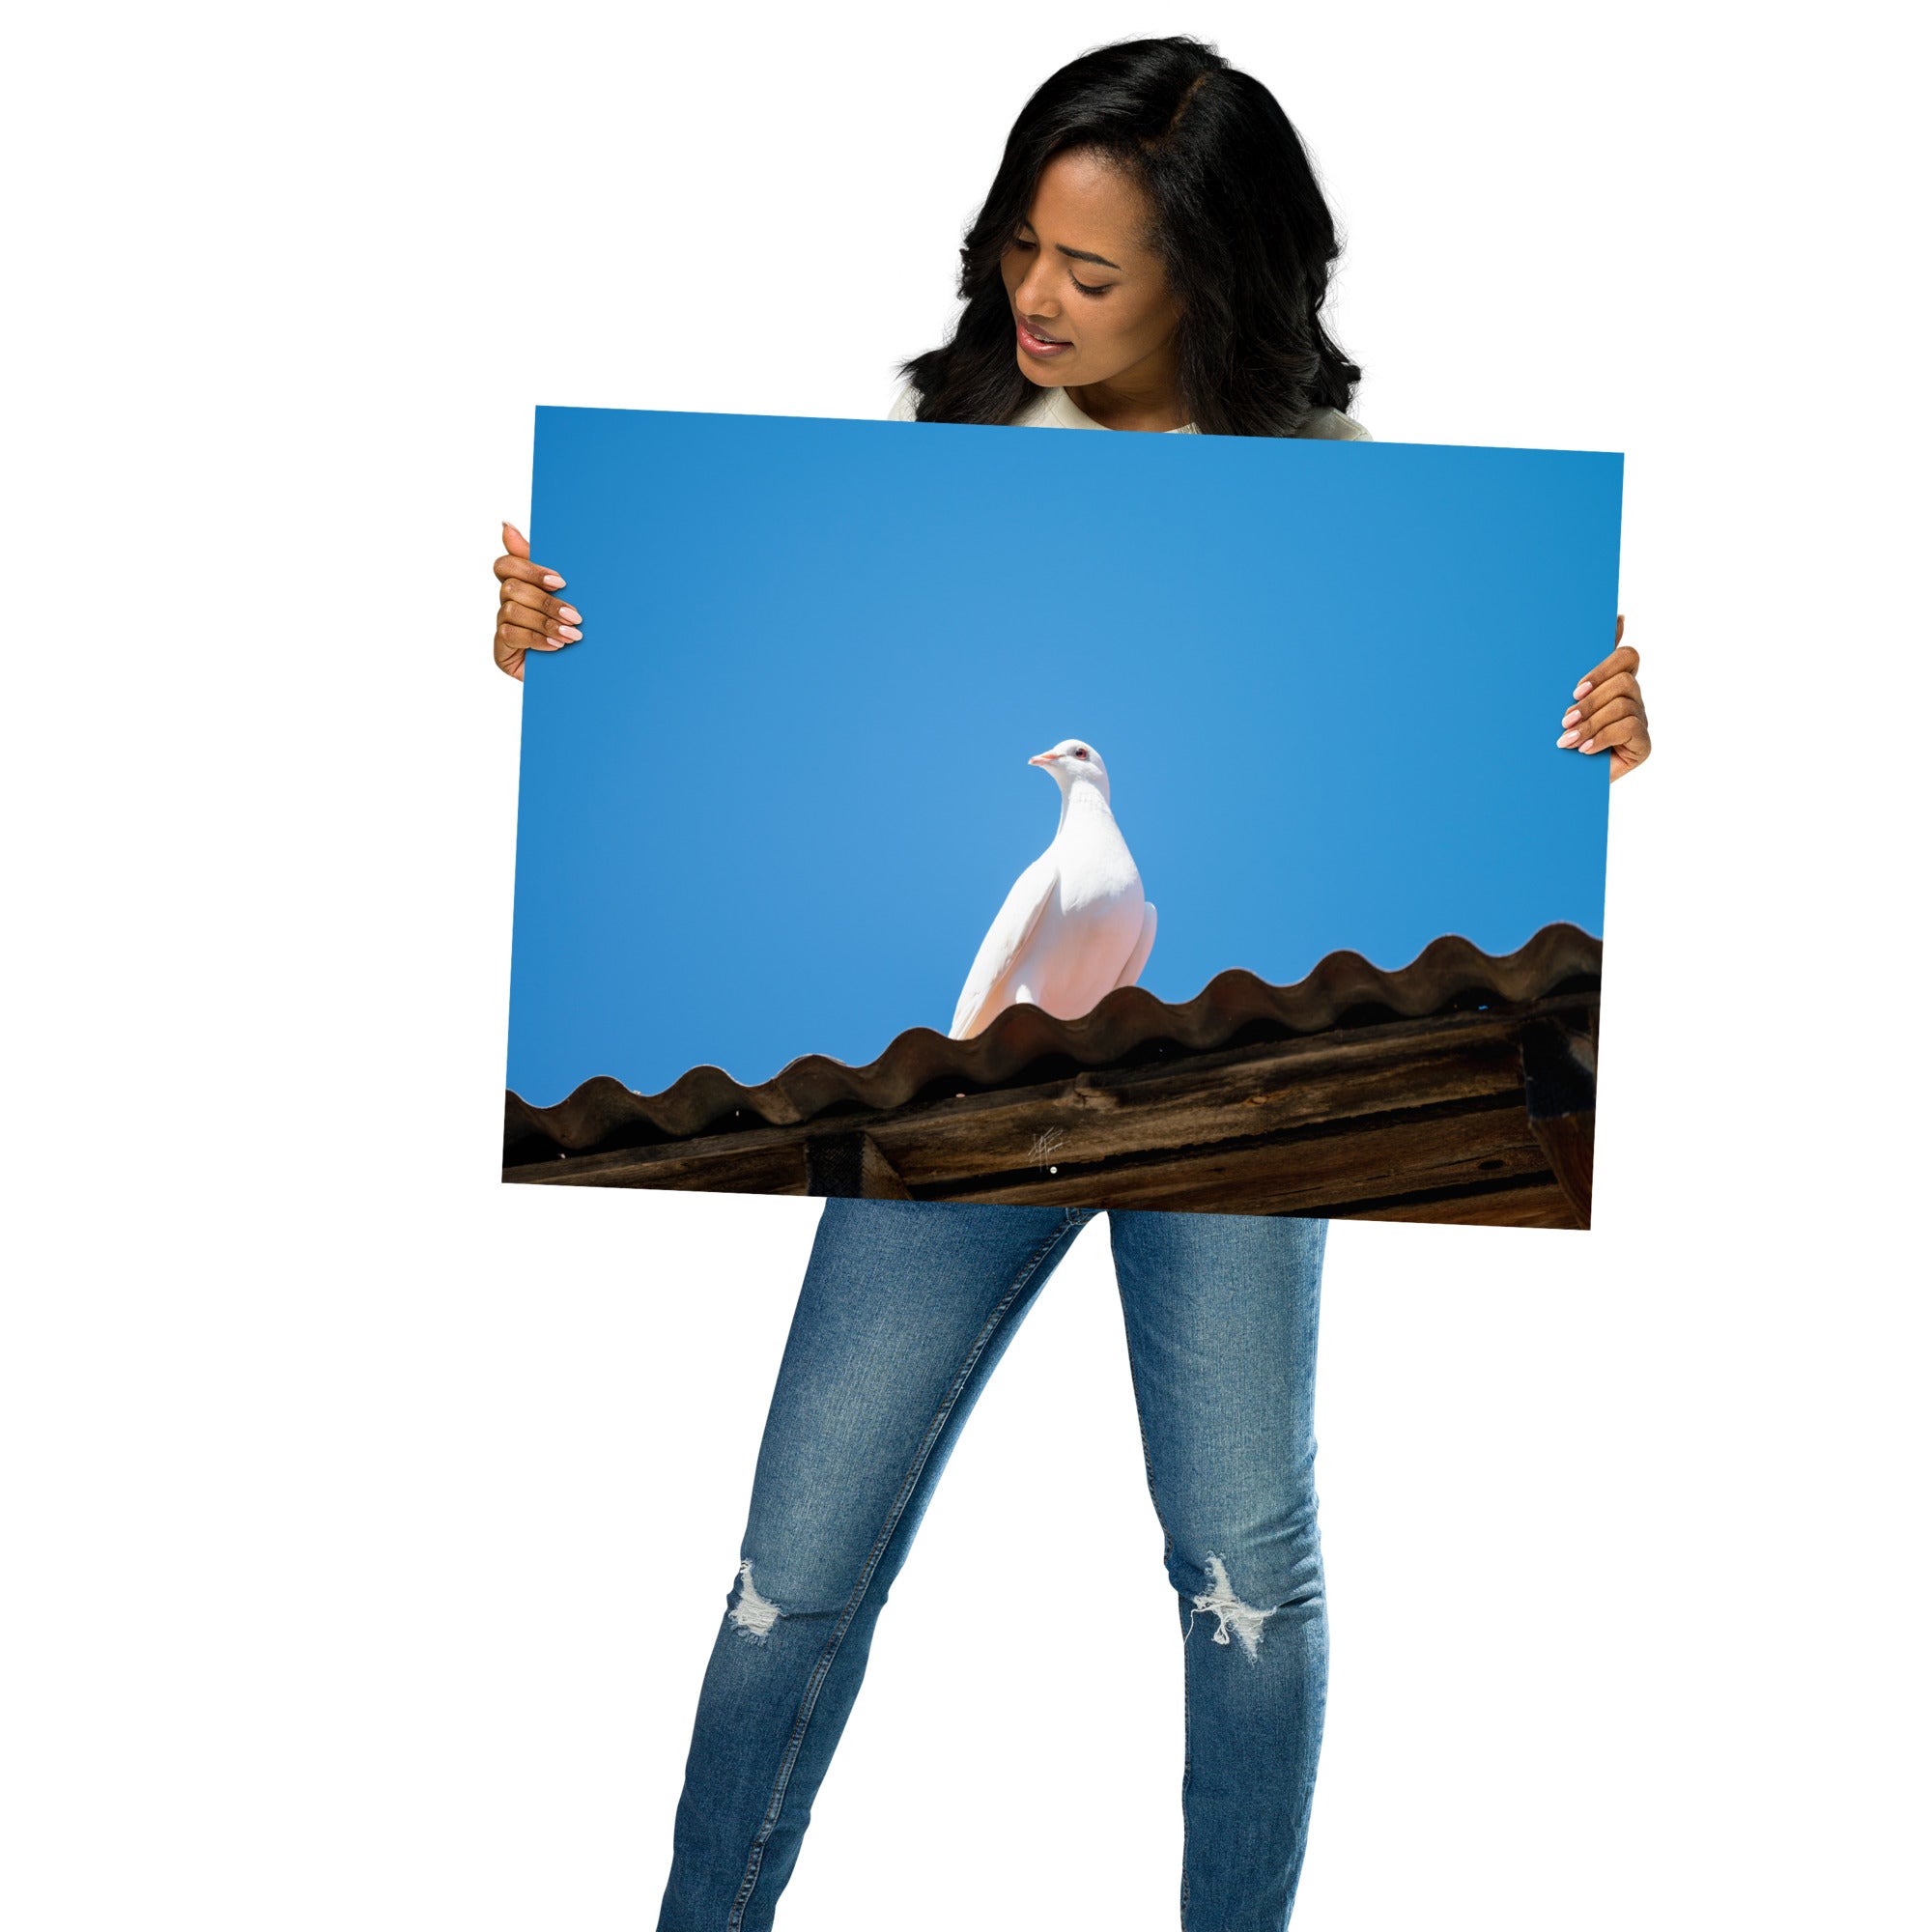 Photographie délicate 'Blanche Colombe' montrant un oiseau blanc en contemplation, imprimée sur papier haut de gamme.